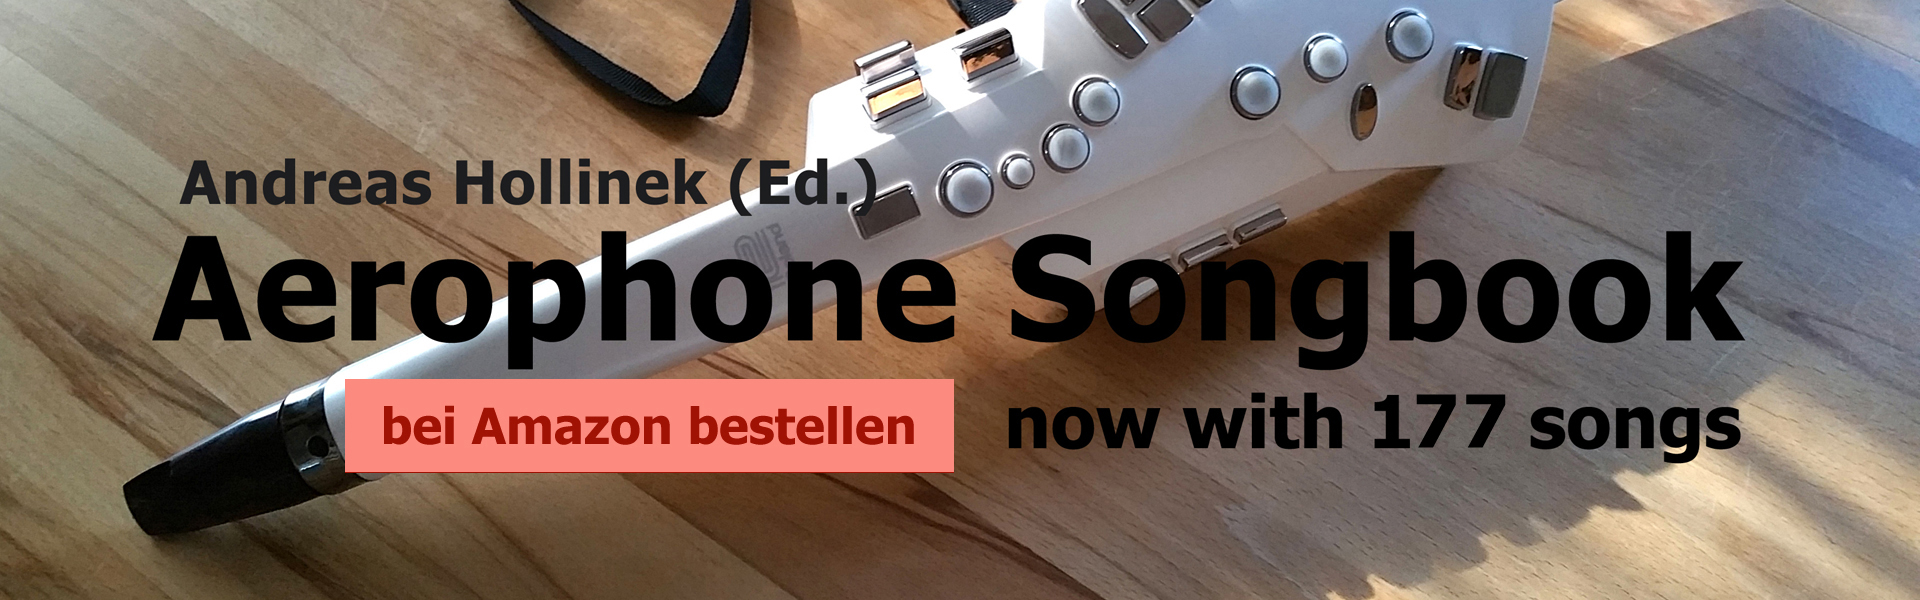 Aerophone Songbook bei Amazon bestellen